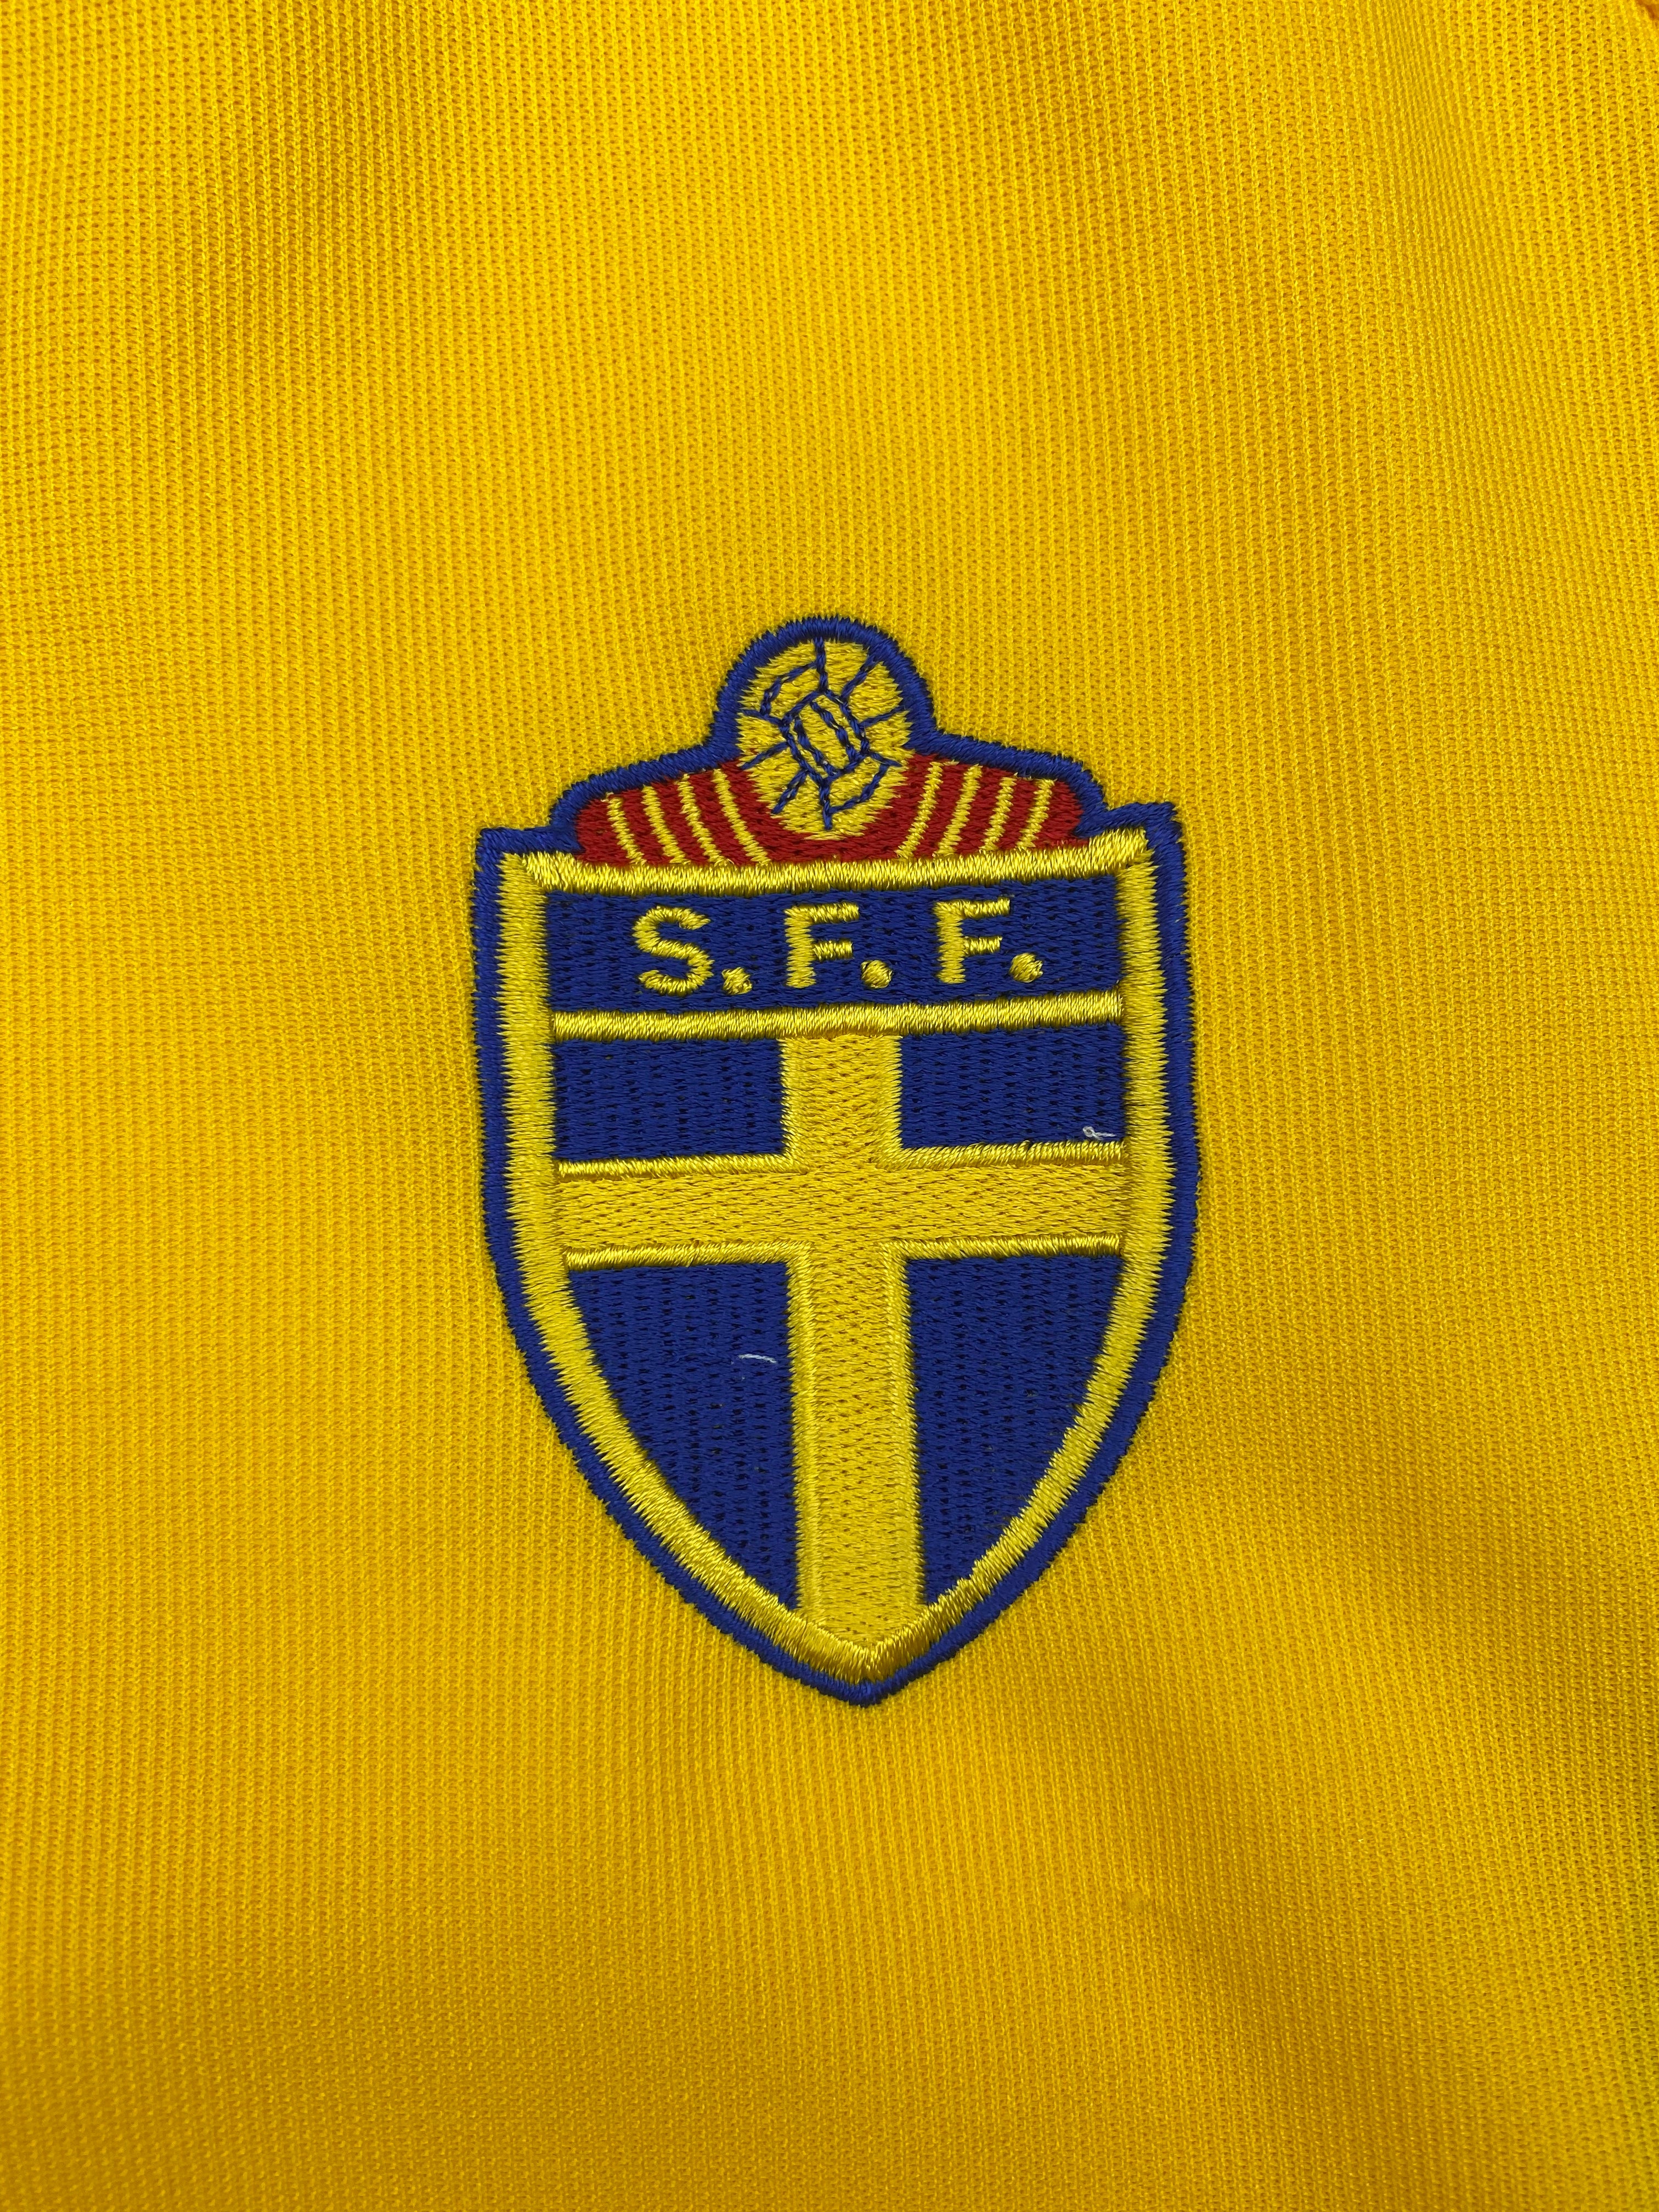 2002/03 Camiseta local de Suecia (L) 8,5/10 